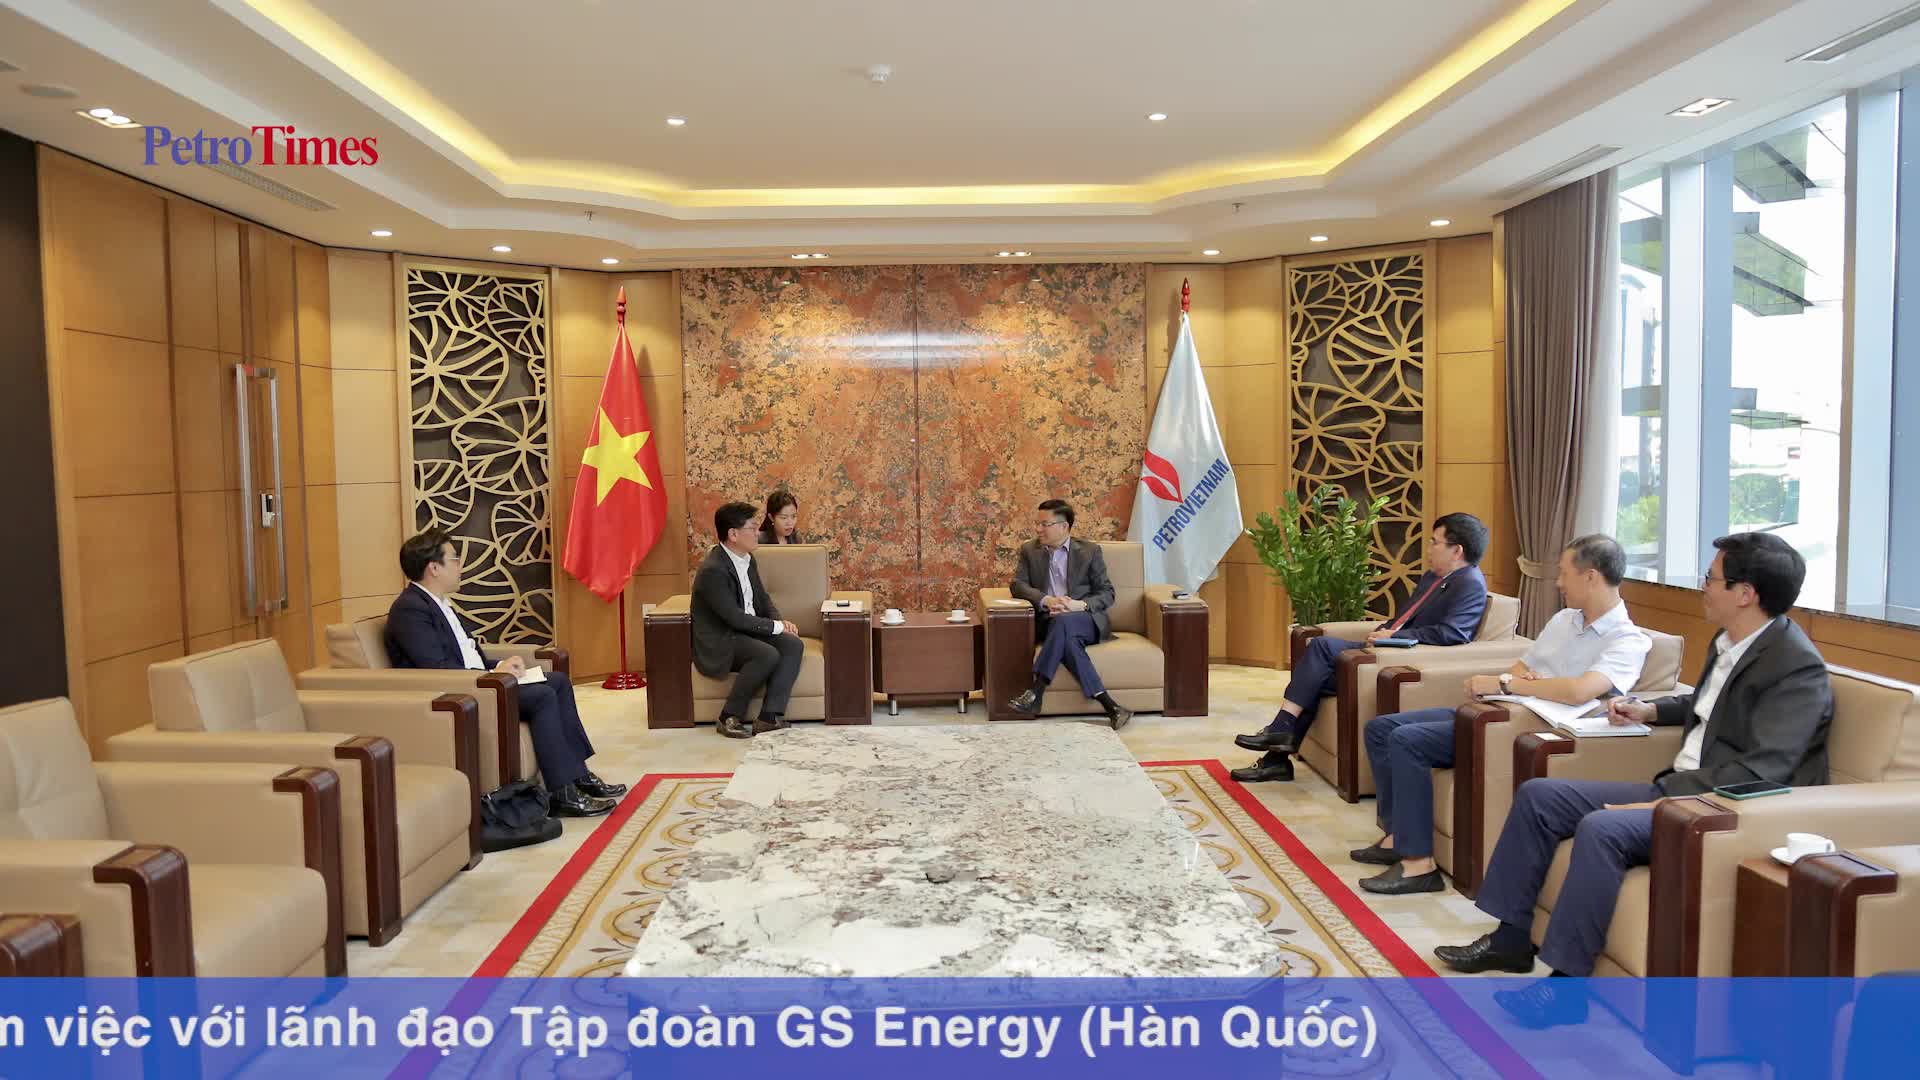 Tổng giám đốc Petrovietnam Lê Mạnh Hùng làm việc với lãnh đạo Tập đoàn GS Energy(Hàn Quốc)